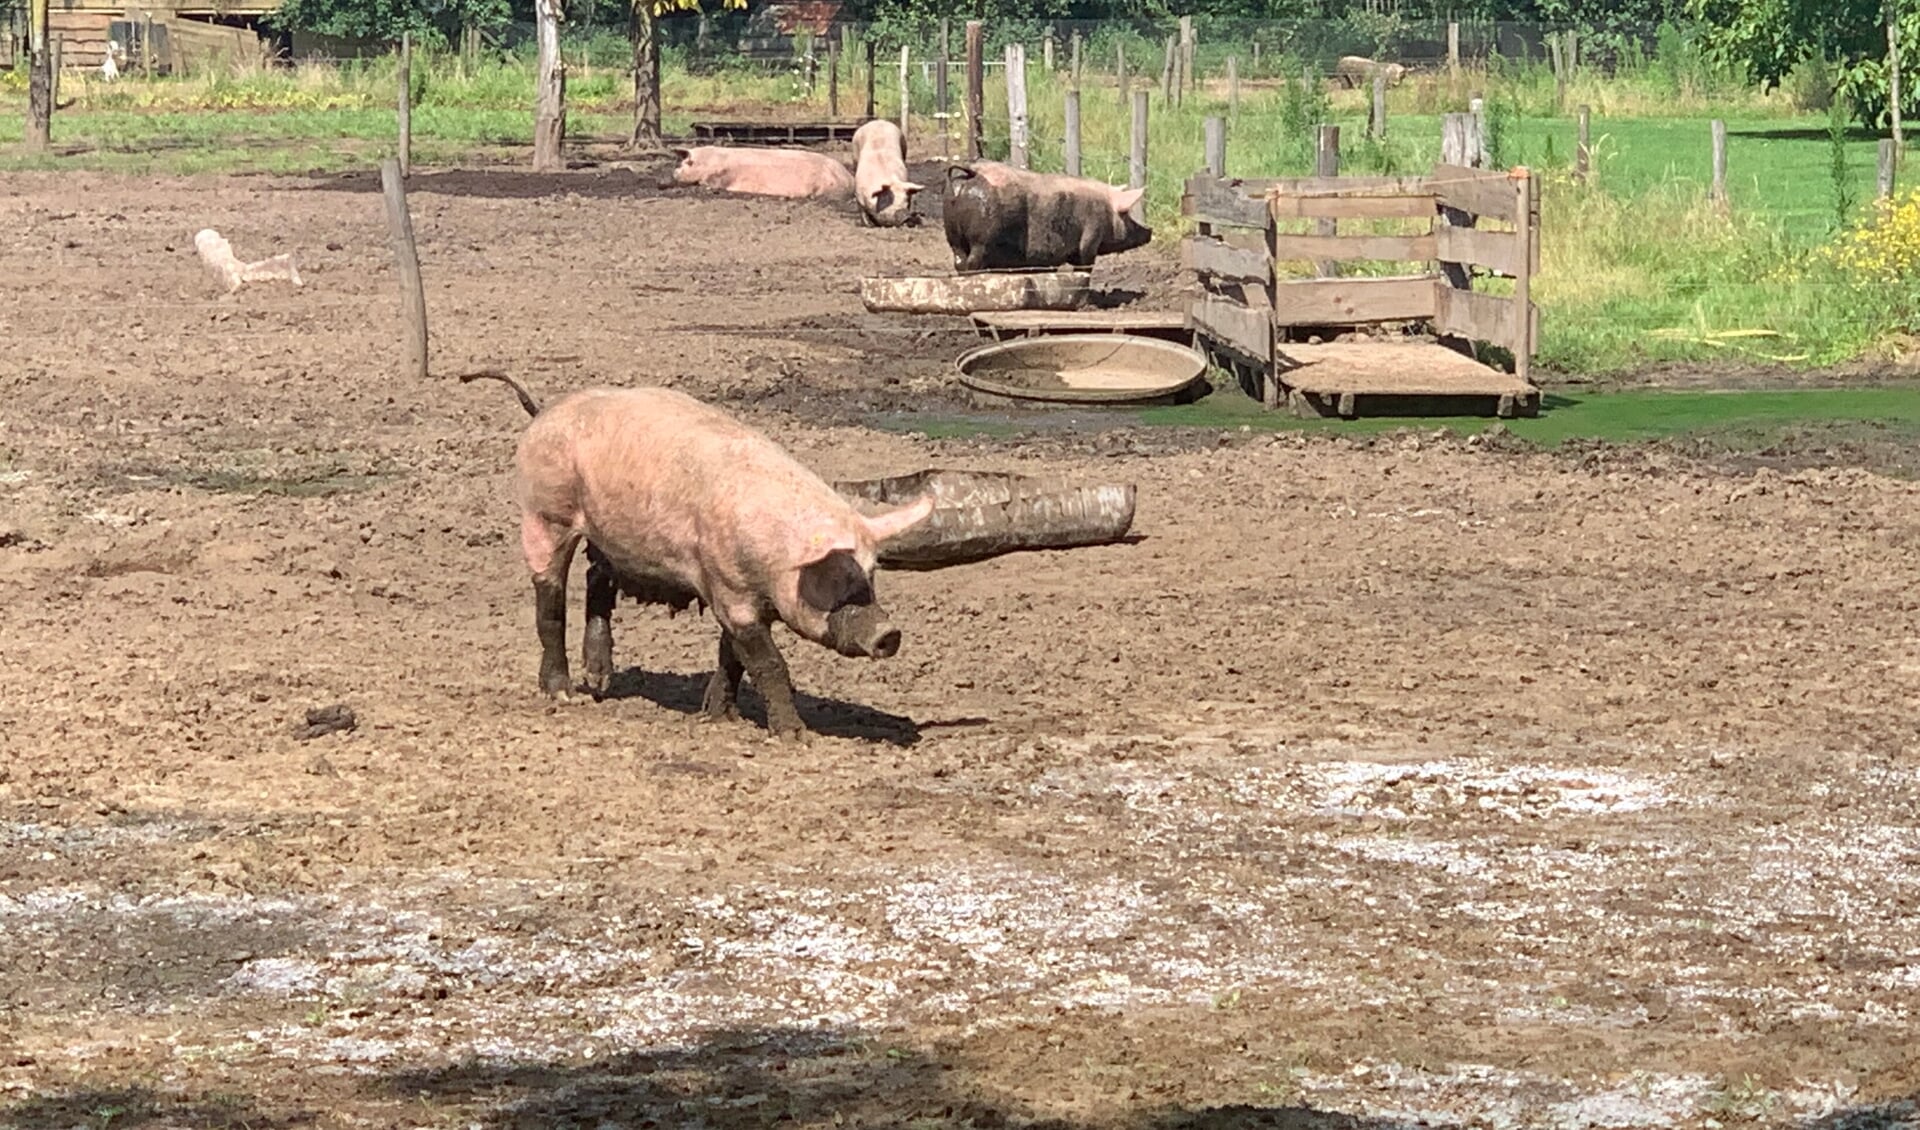 Varkens lopen vrijuit in de modderweide van boer Westerveld. Foto: PP